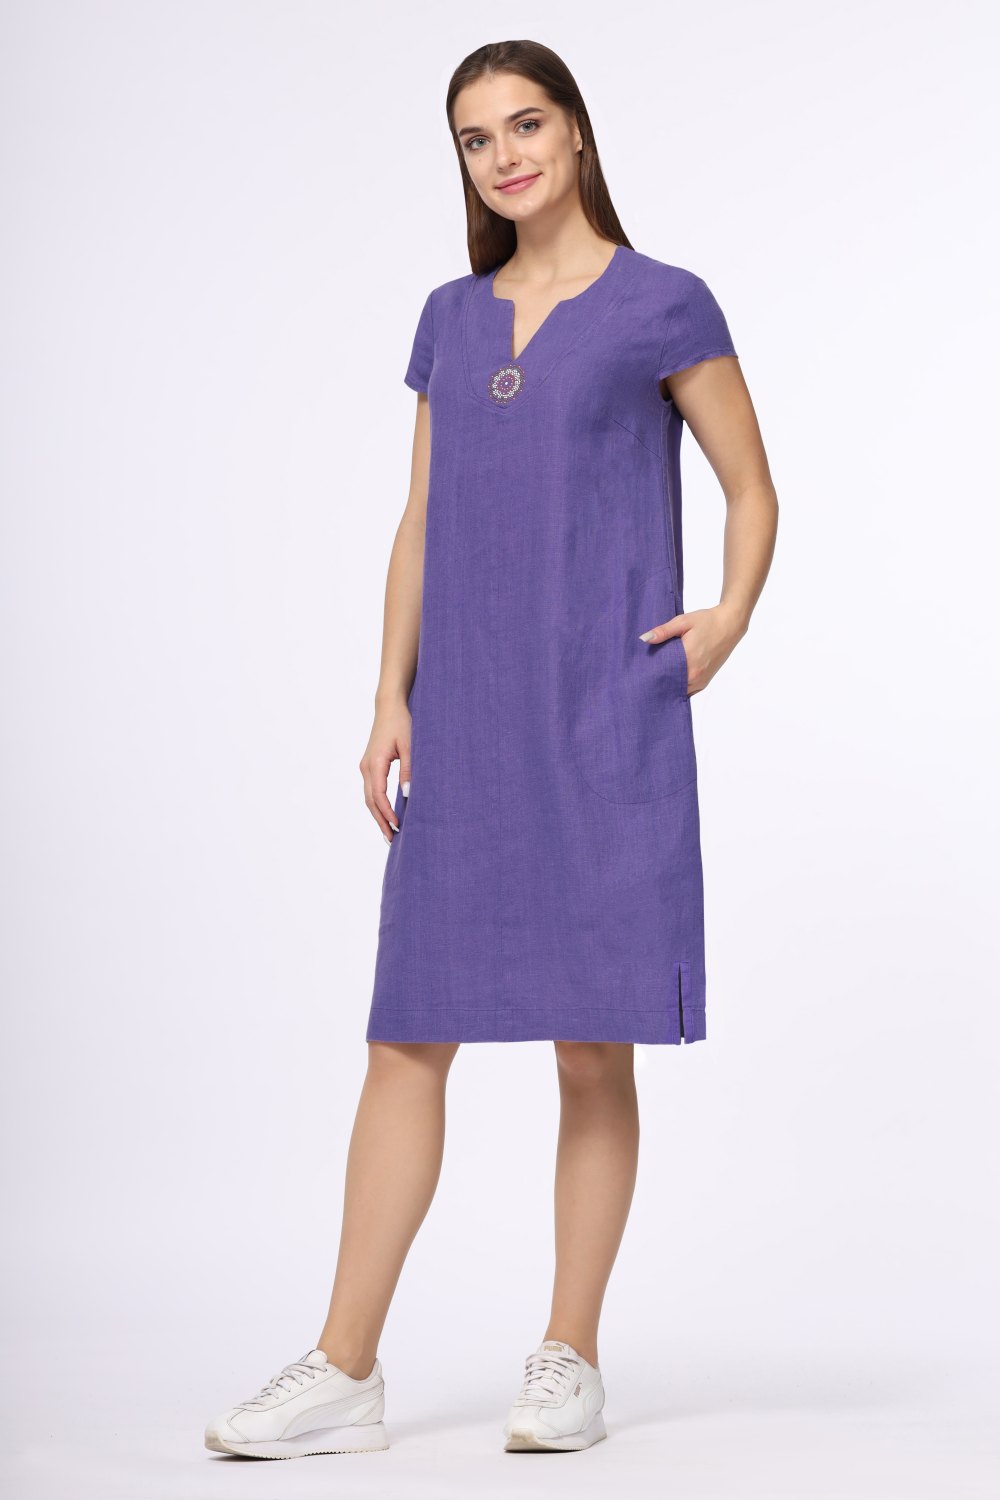 Платье "С карманами" миди модель 428 цвет: фиолетовый